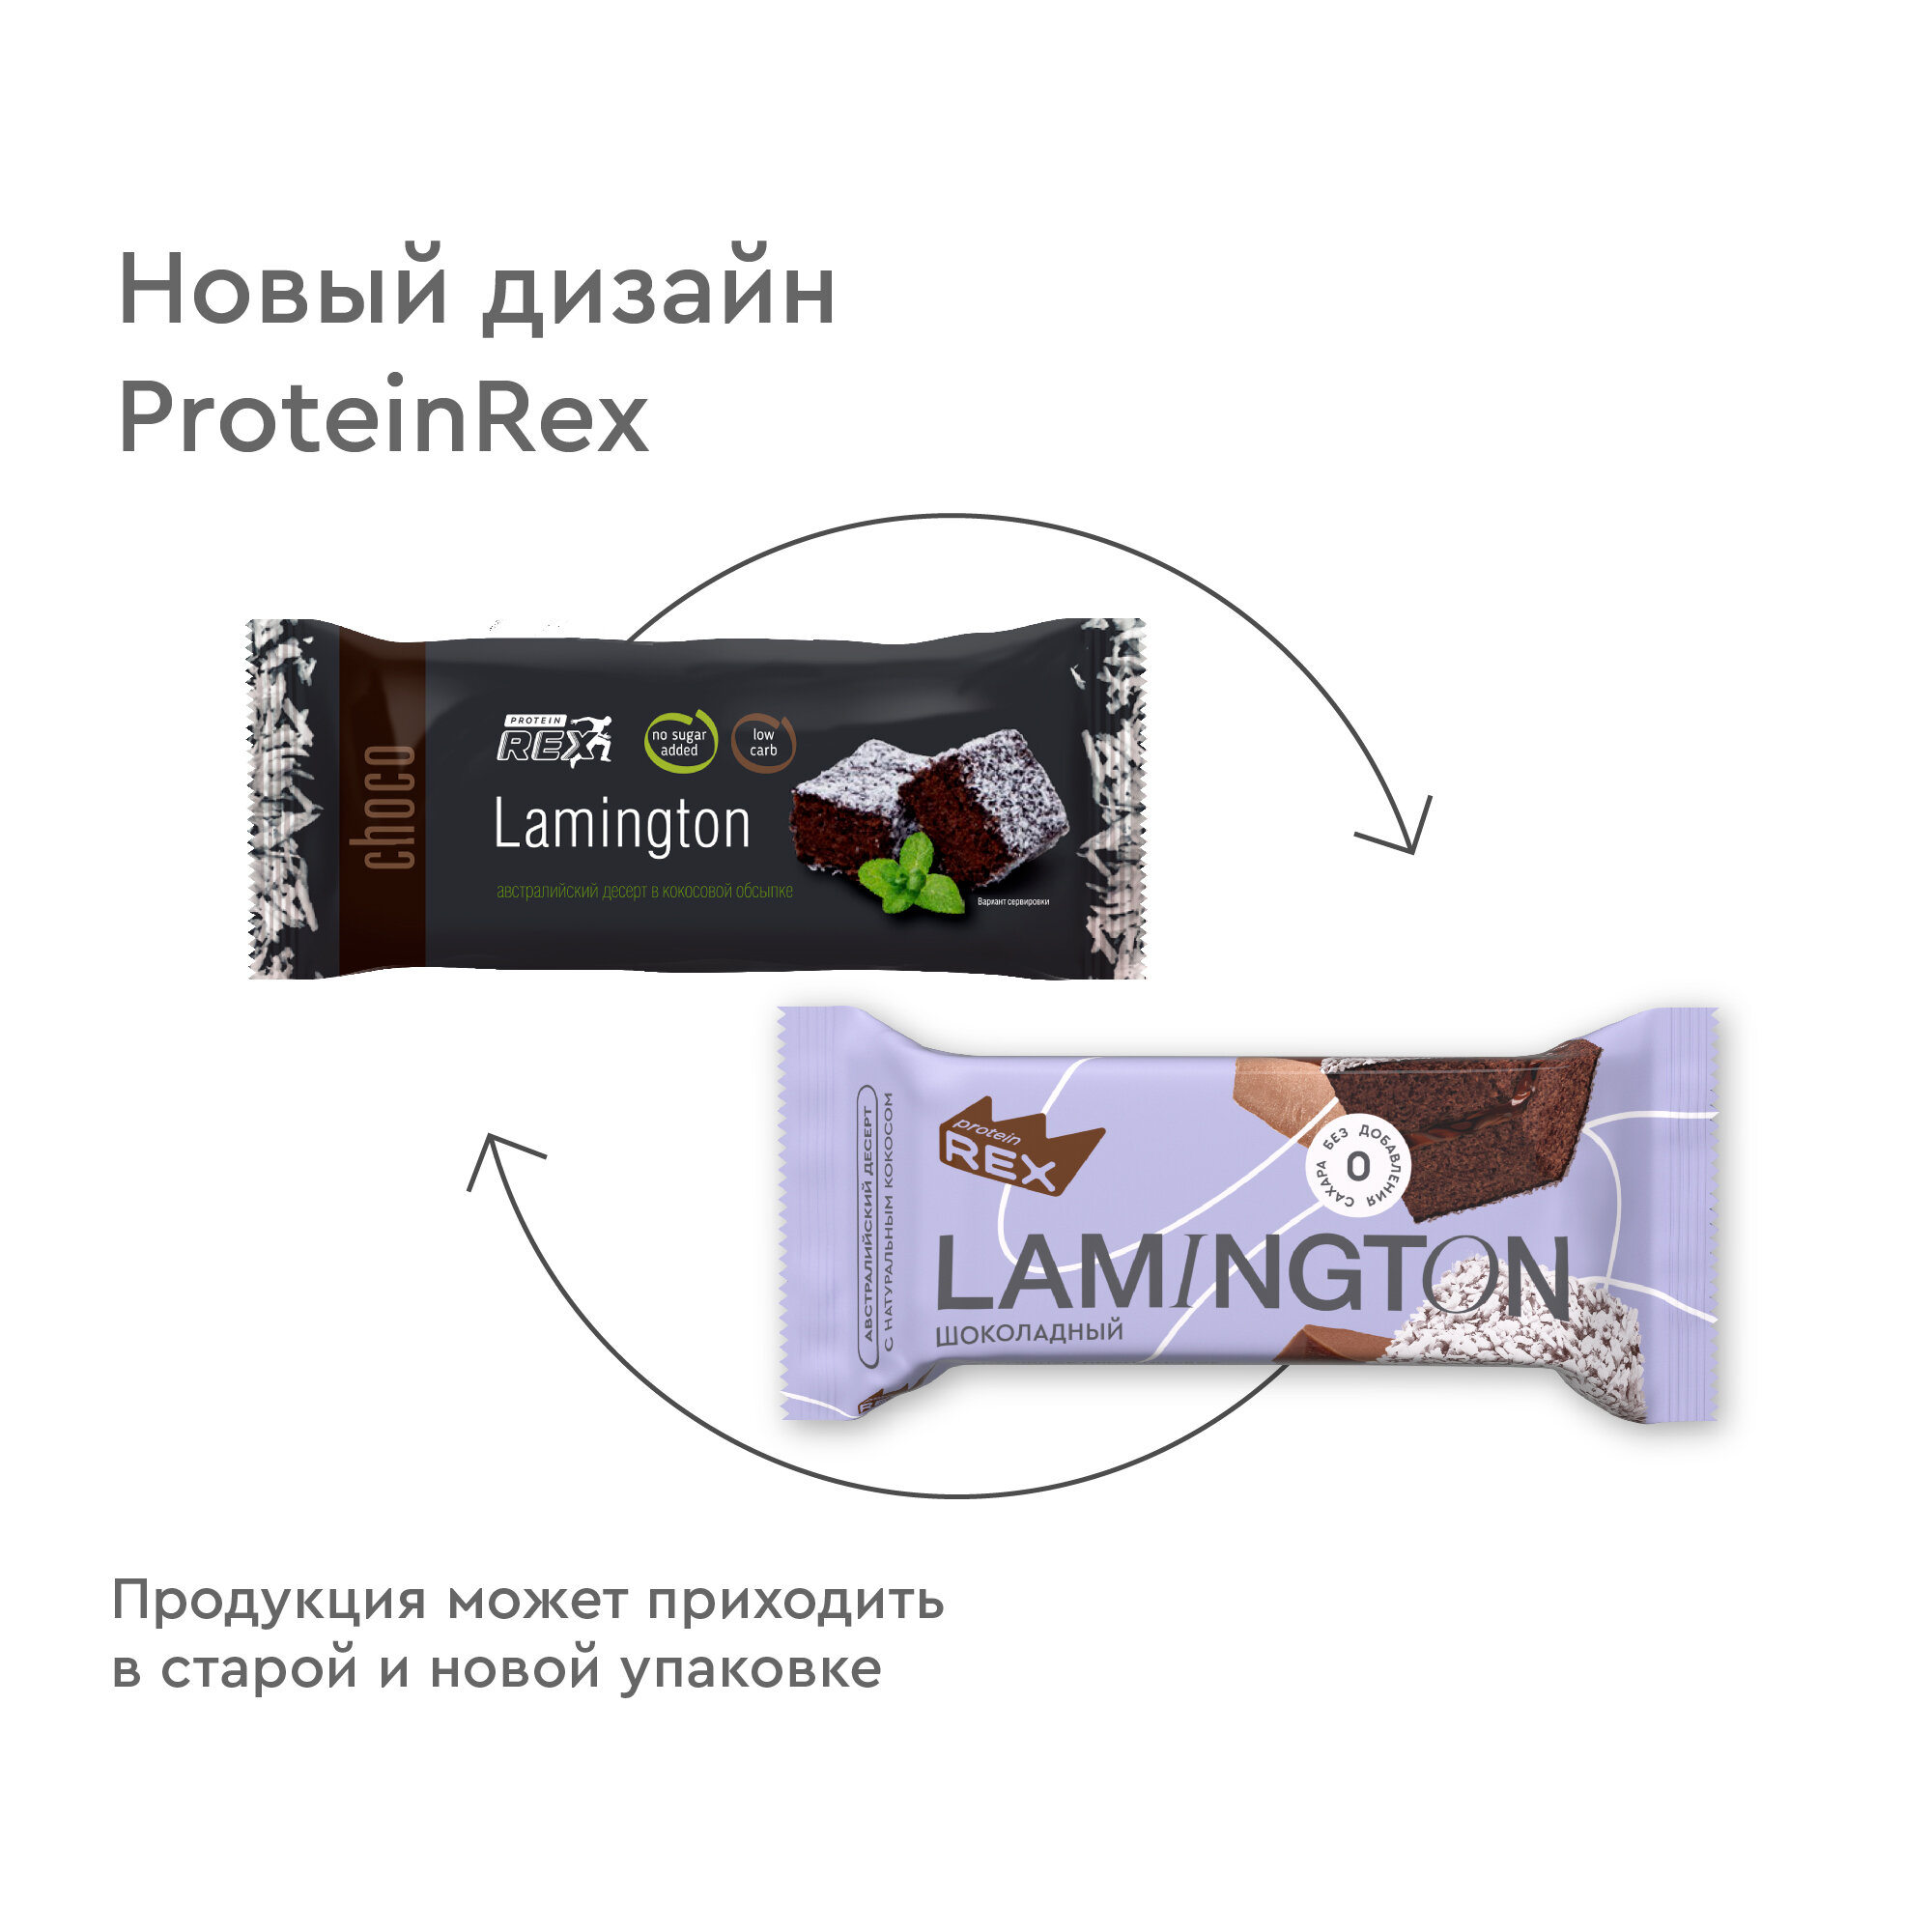 Протеиновые пирожные ProteinRex Lamington Ассорти Мини 4 шт х 50 г без сахара, 195 ккал, спортивное питание, ПП сладости, спортивное печенье